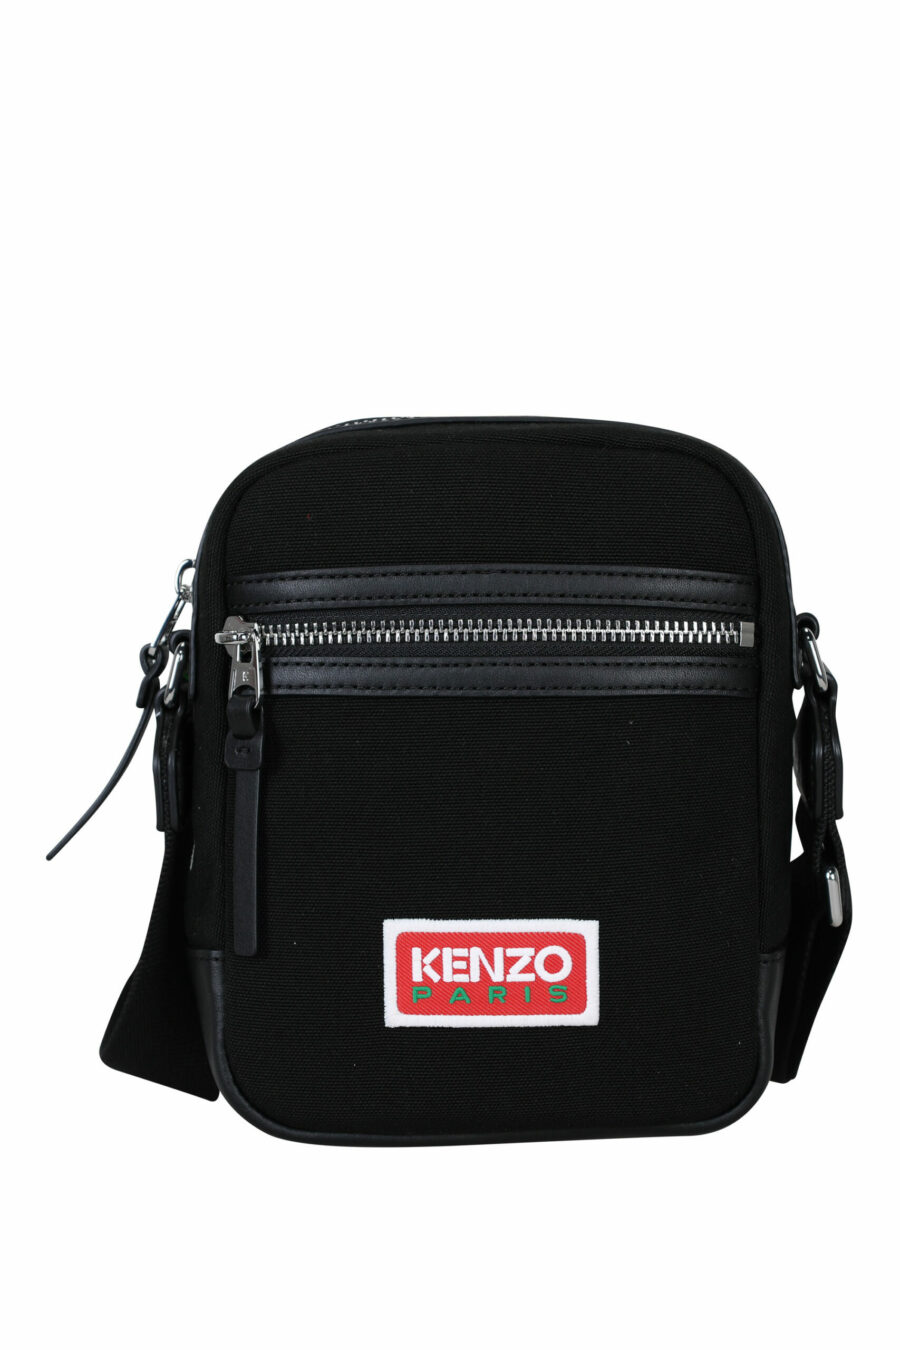 Schwarze Umhängetasche mit "Kenzo Paris"-Logo - 3612230533264 skaliert